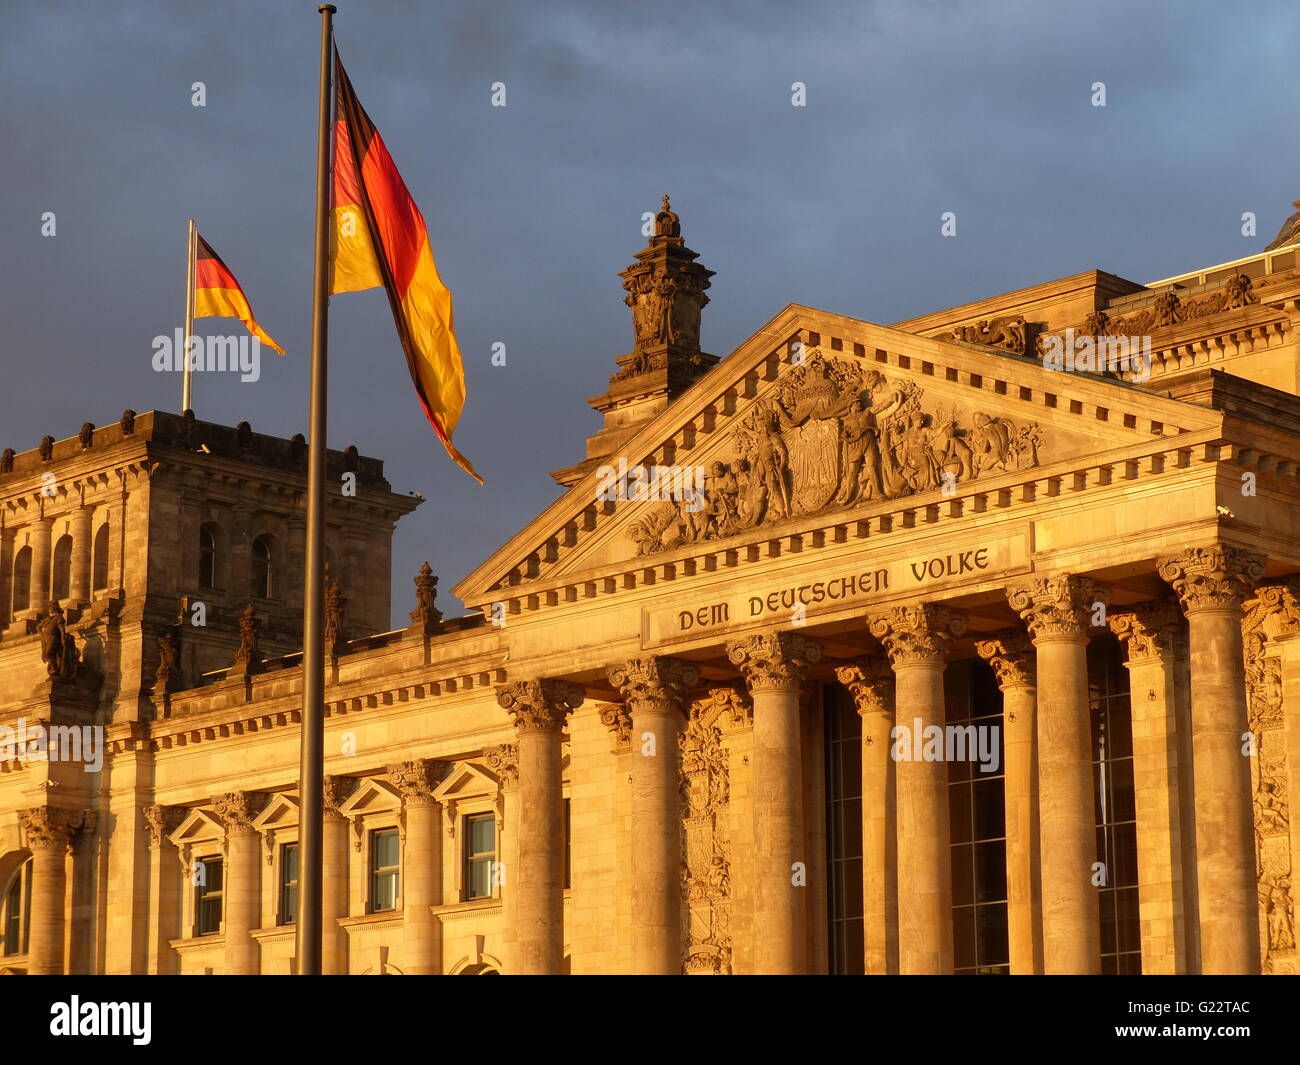 Berlin - Allemagne. Bâtiment du Reichstag, le parlement allemand totalement restauré après la destruction partielle pendant la fin de la DEUXIÈME GUERRE MONDIALE Banque D'Images